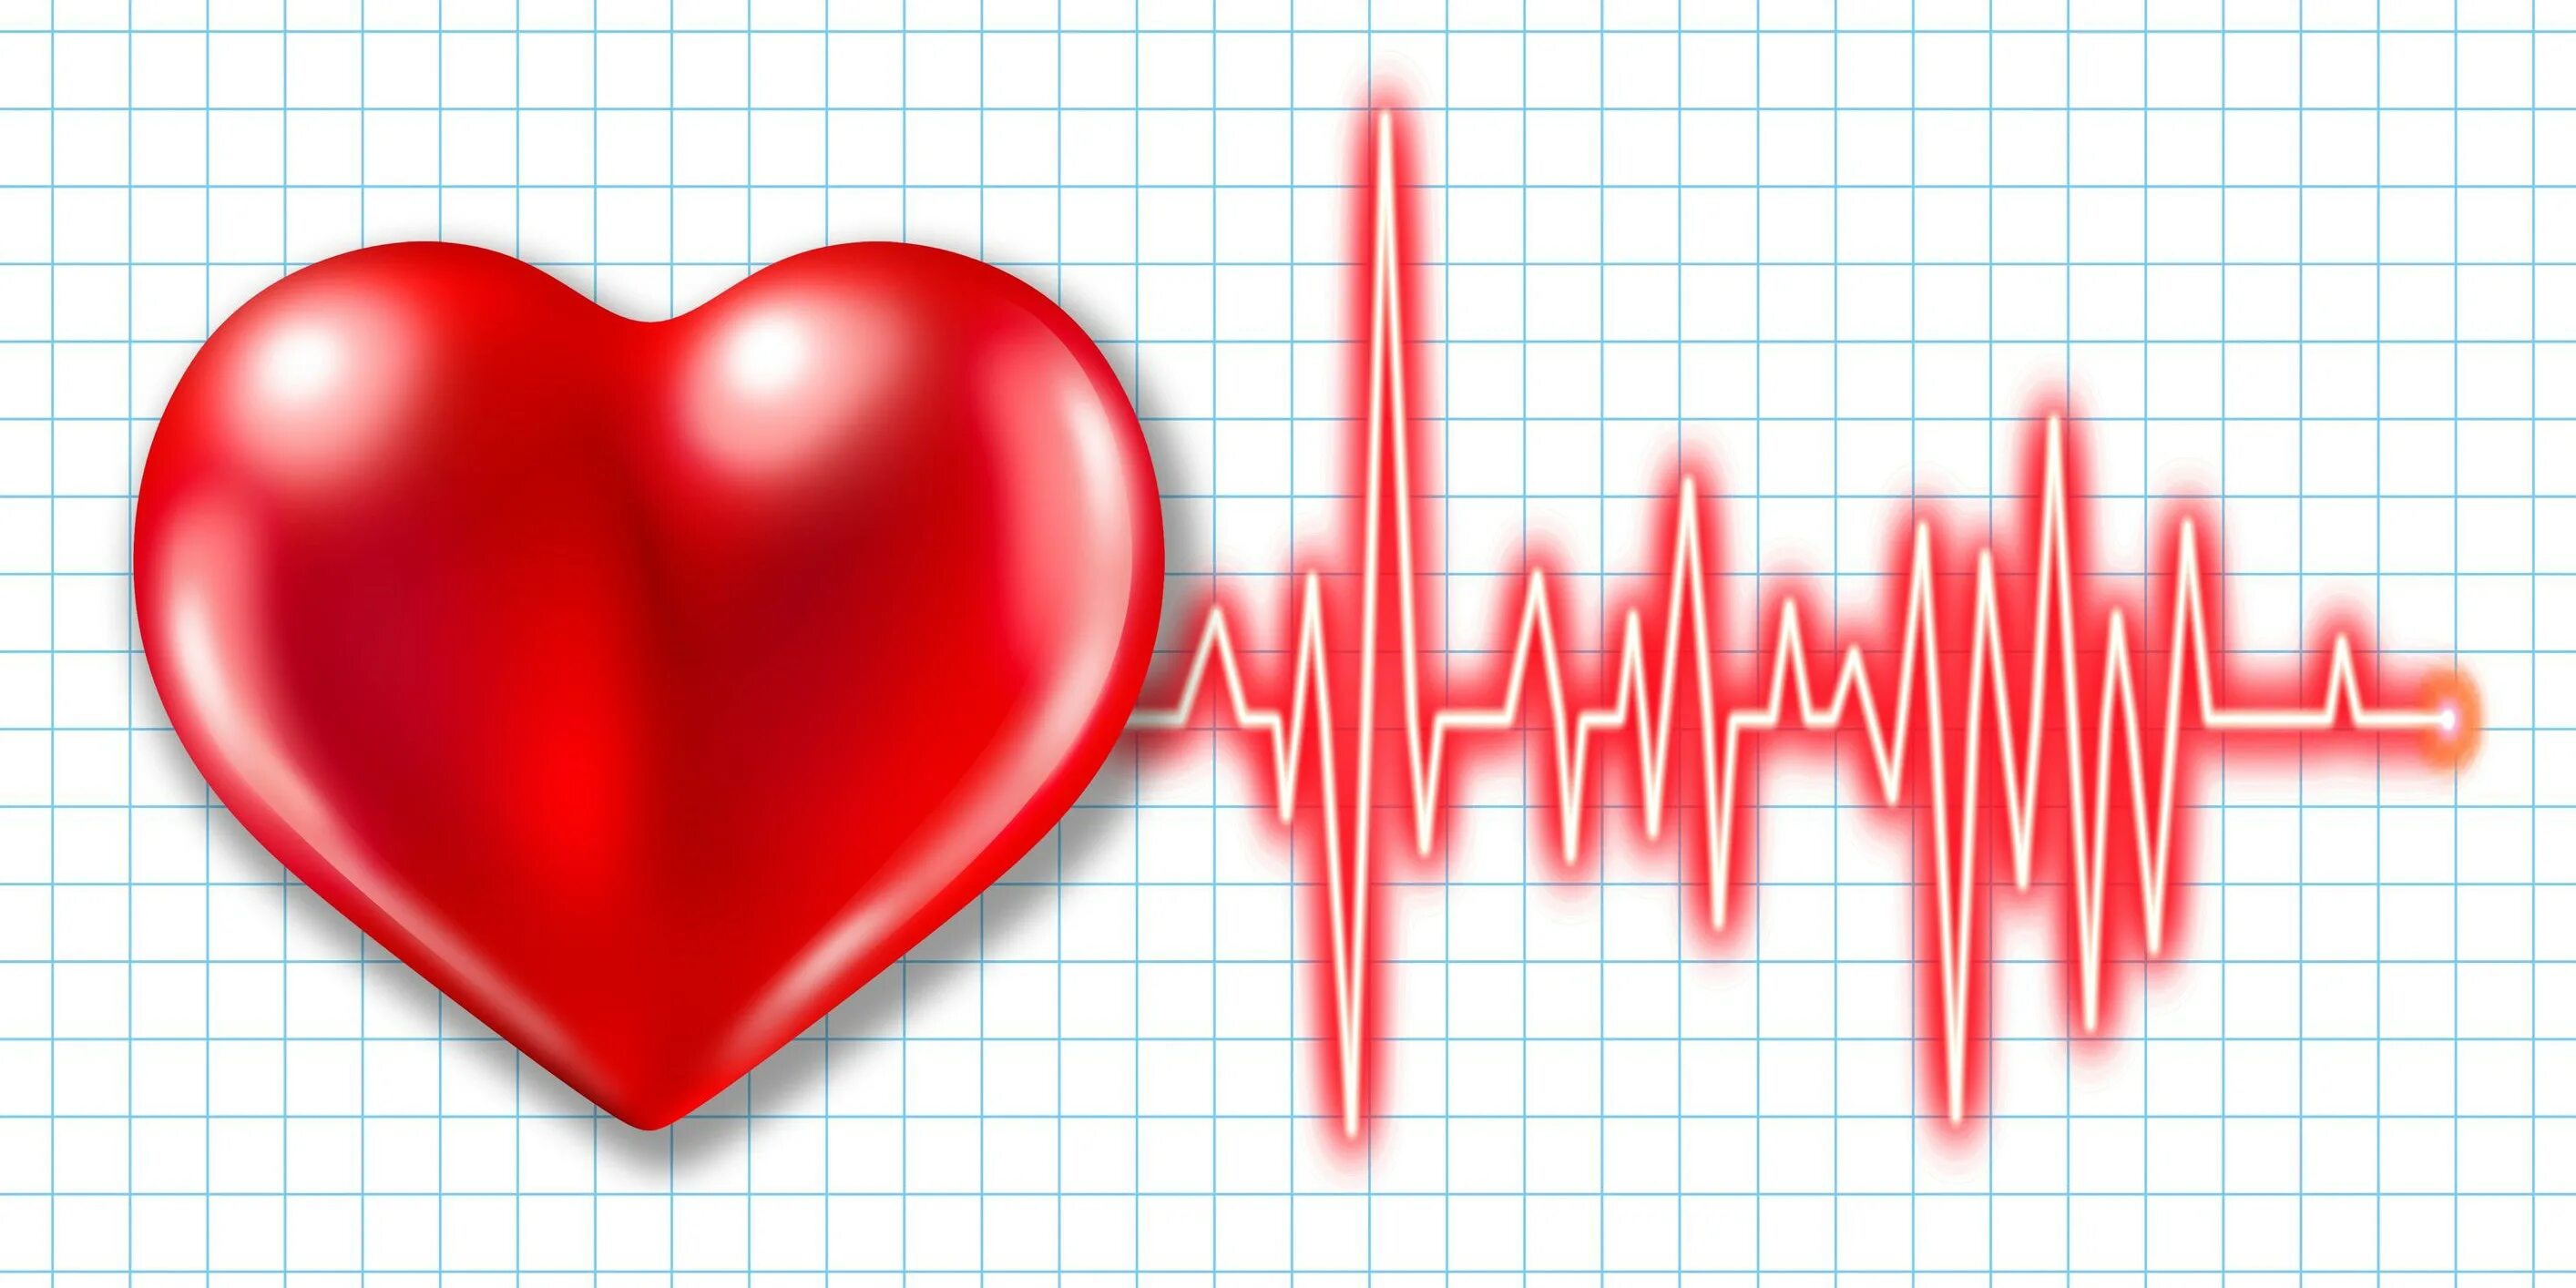 Сердце учащенное сердцебиение. ЭКГ сердца. Кардиограмма сердца. Кардиограмма сердца рисунок. Кардиограмма с сердечком.